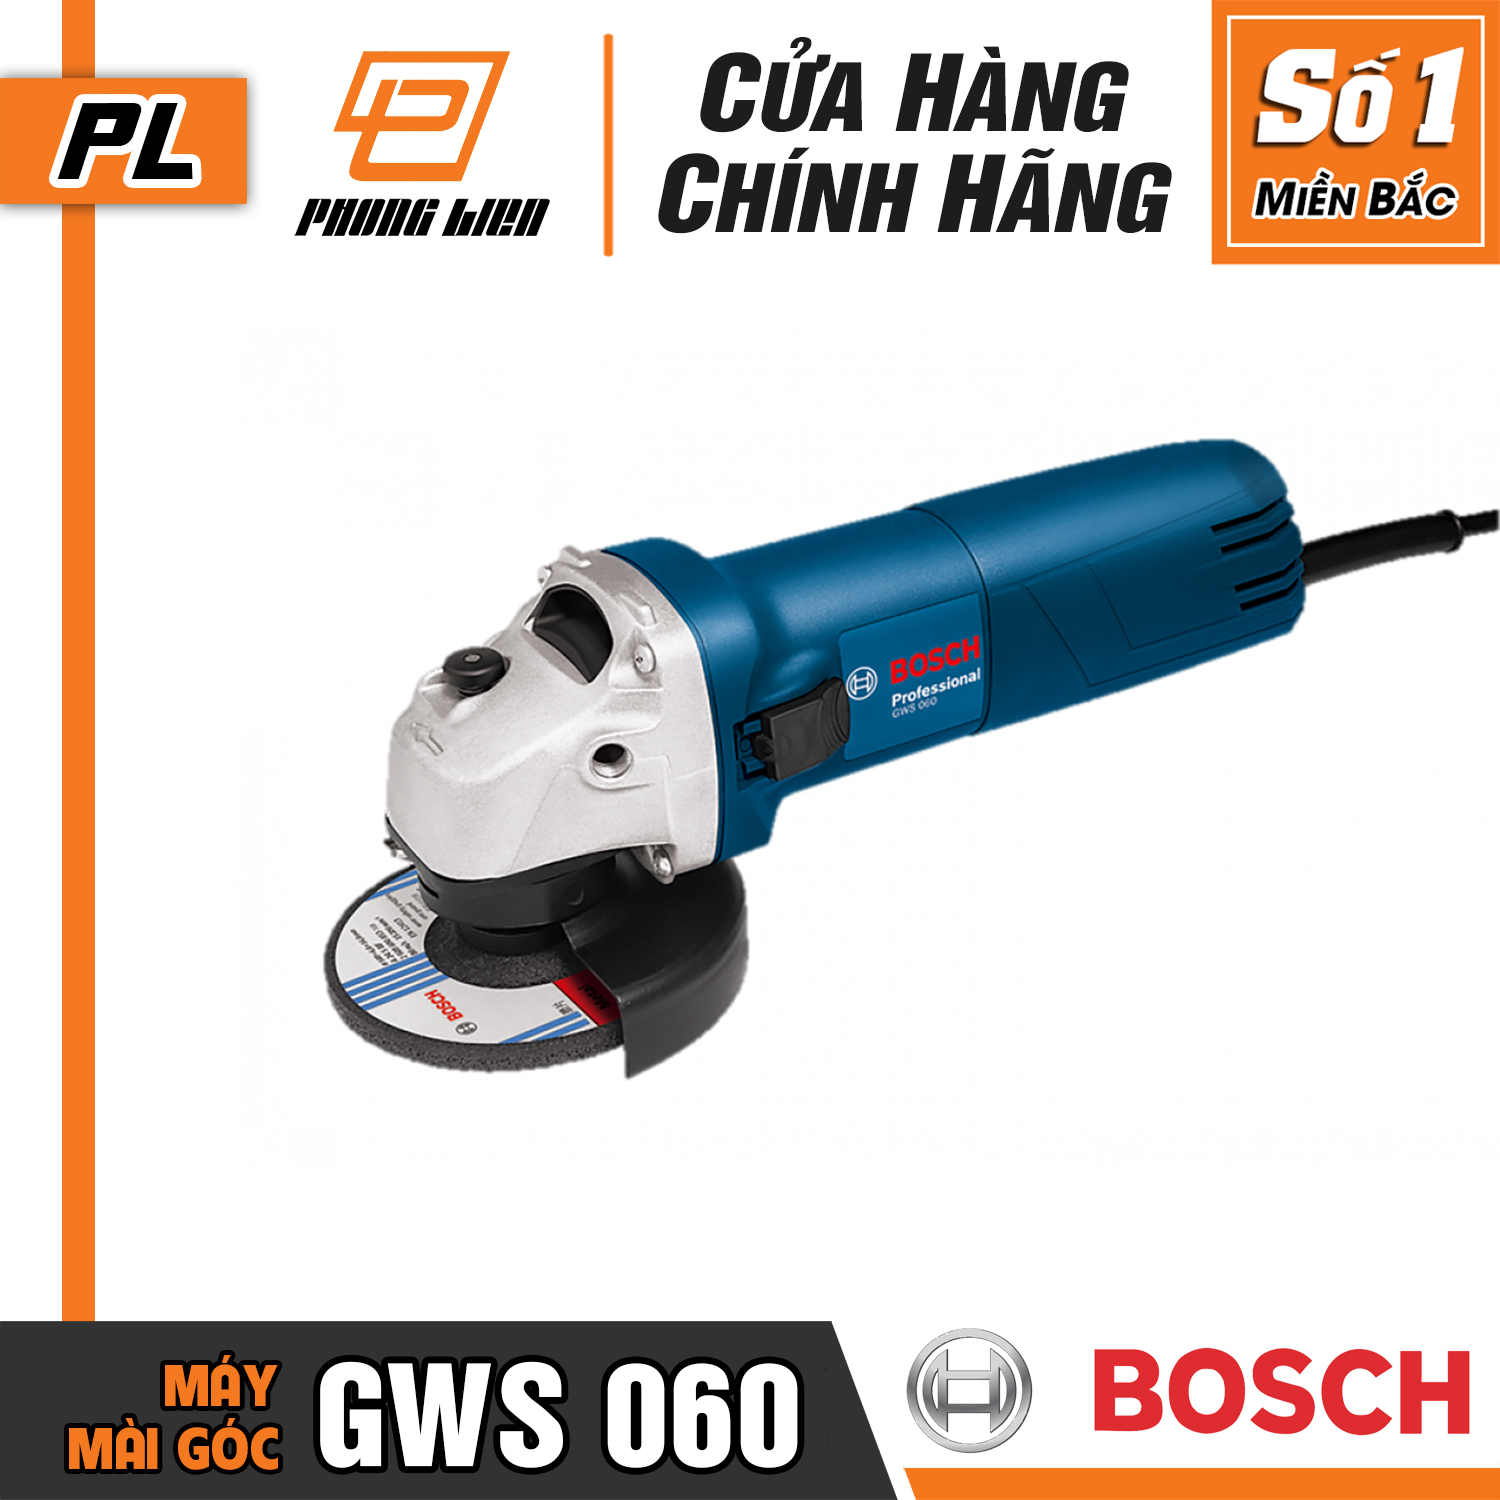 [Chính Hãng] Máy Mài Góc Bosch GWS 060 (670W)